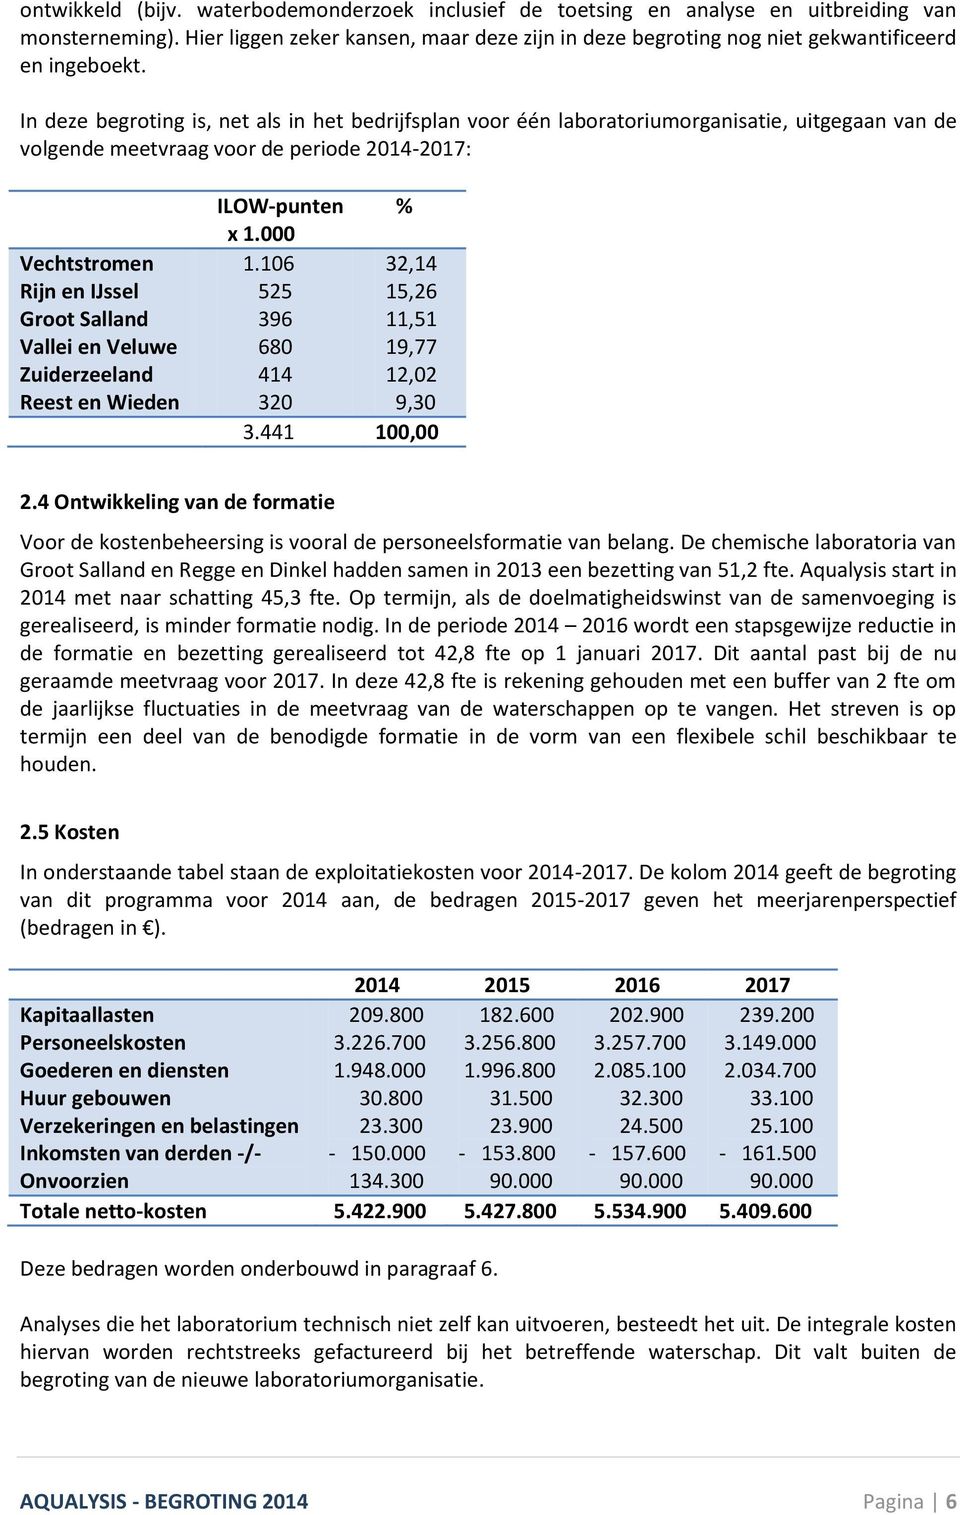 In deze begroting is, net als in het bedrijfsplan voor één laboratoriumorganisatie, uitgegaan van de volgende meetvraag voor de periode 2014-2017: Vechtstromen Rijn en IJssel Groot Salland Vallei en